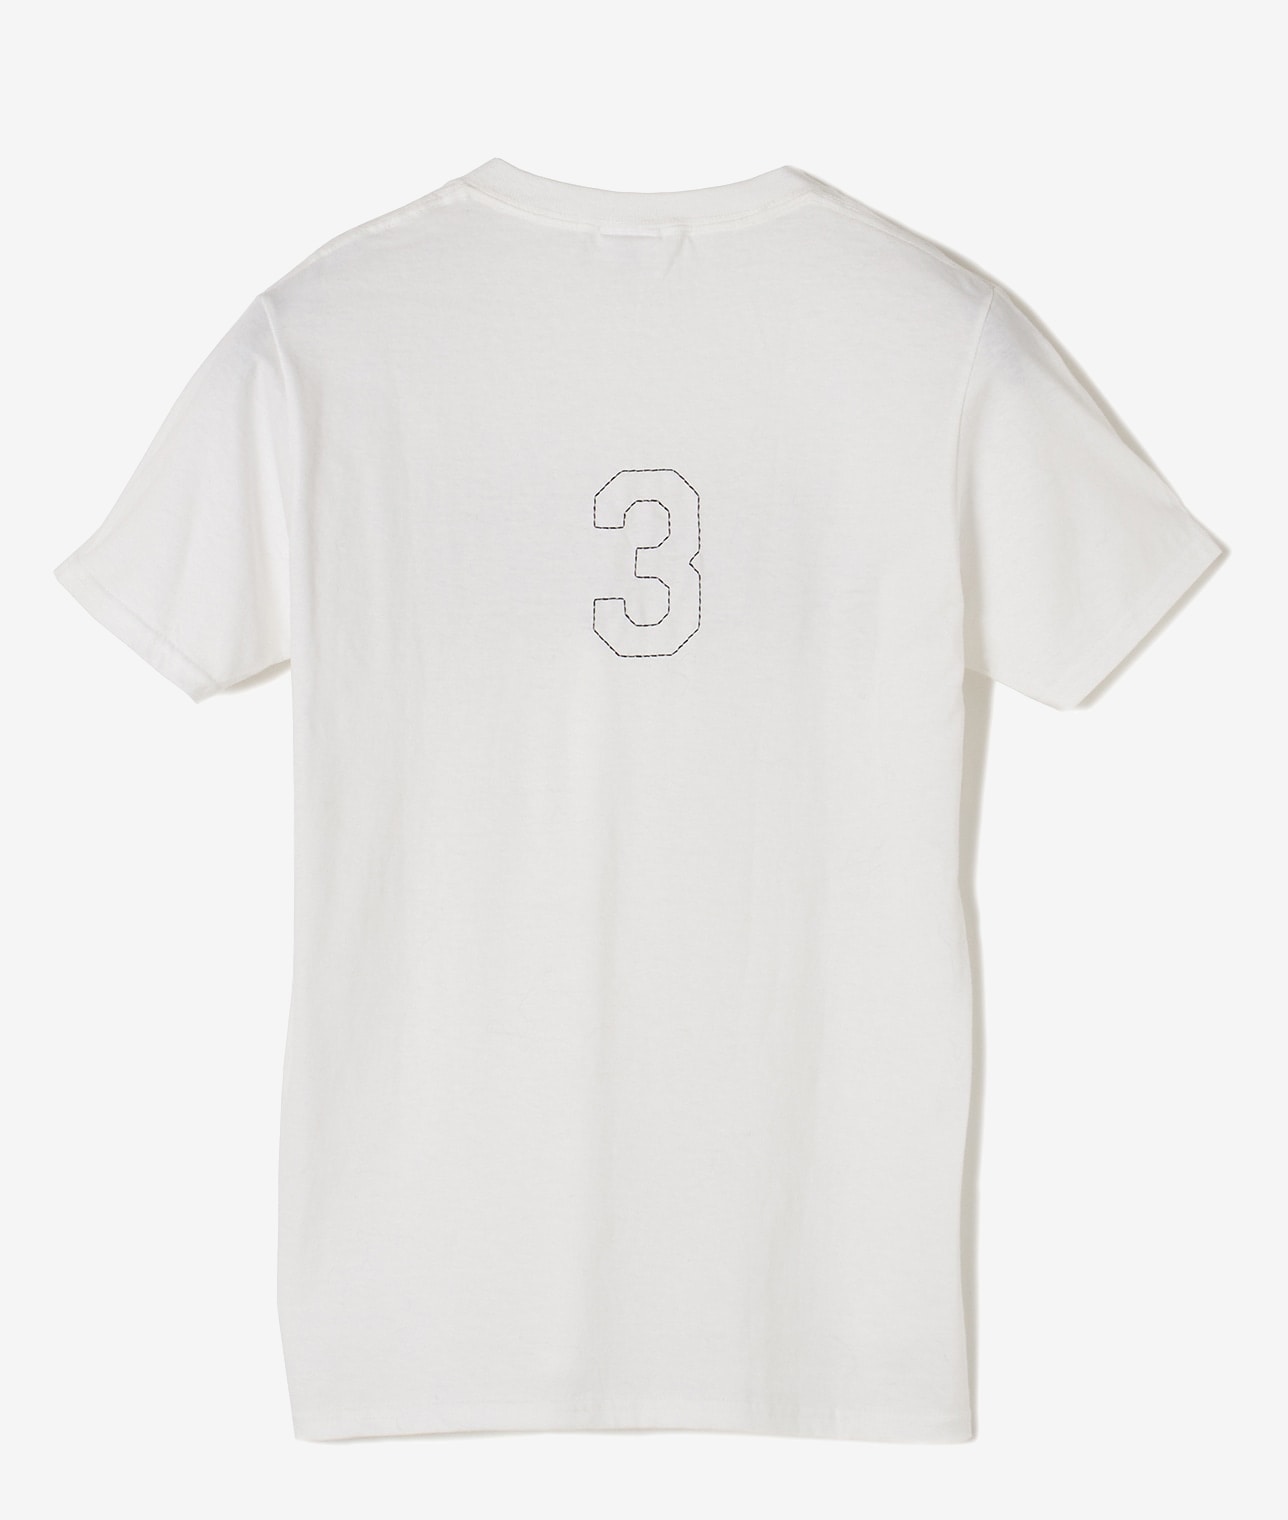 【別注】THIRD MAGAZINE×FRUIT OF THE LOOM パックTシャツ 詳細画像 ホワイト/グレー 6